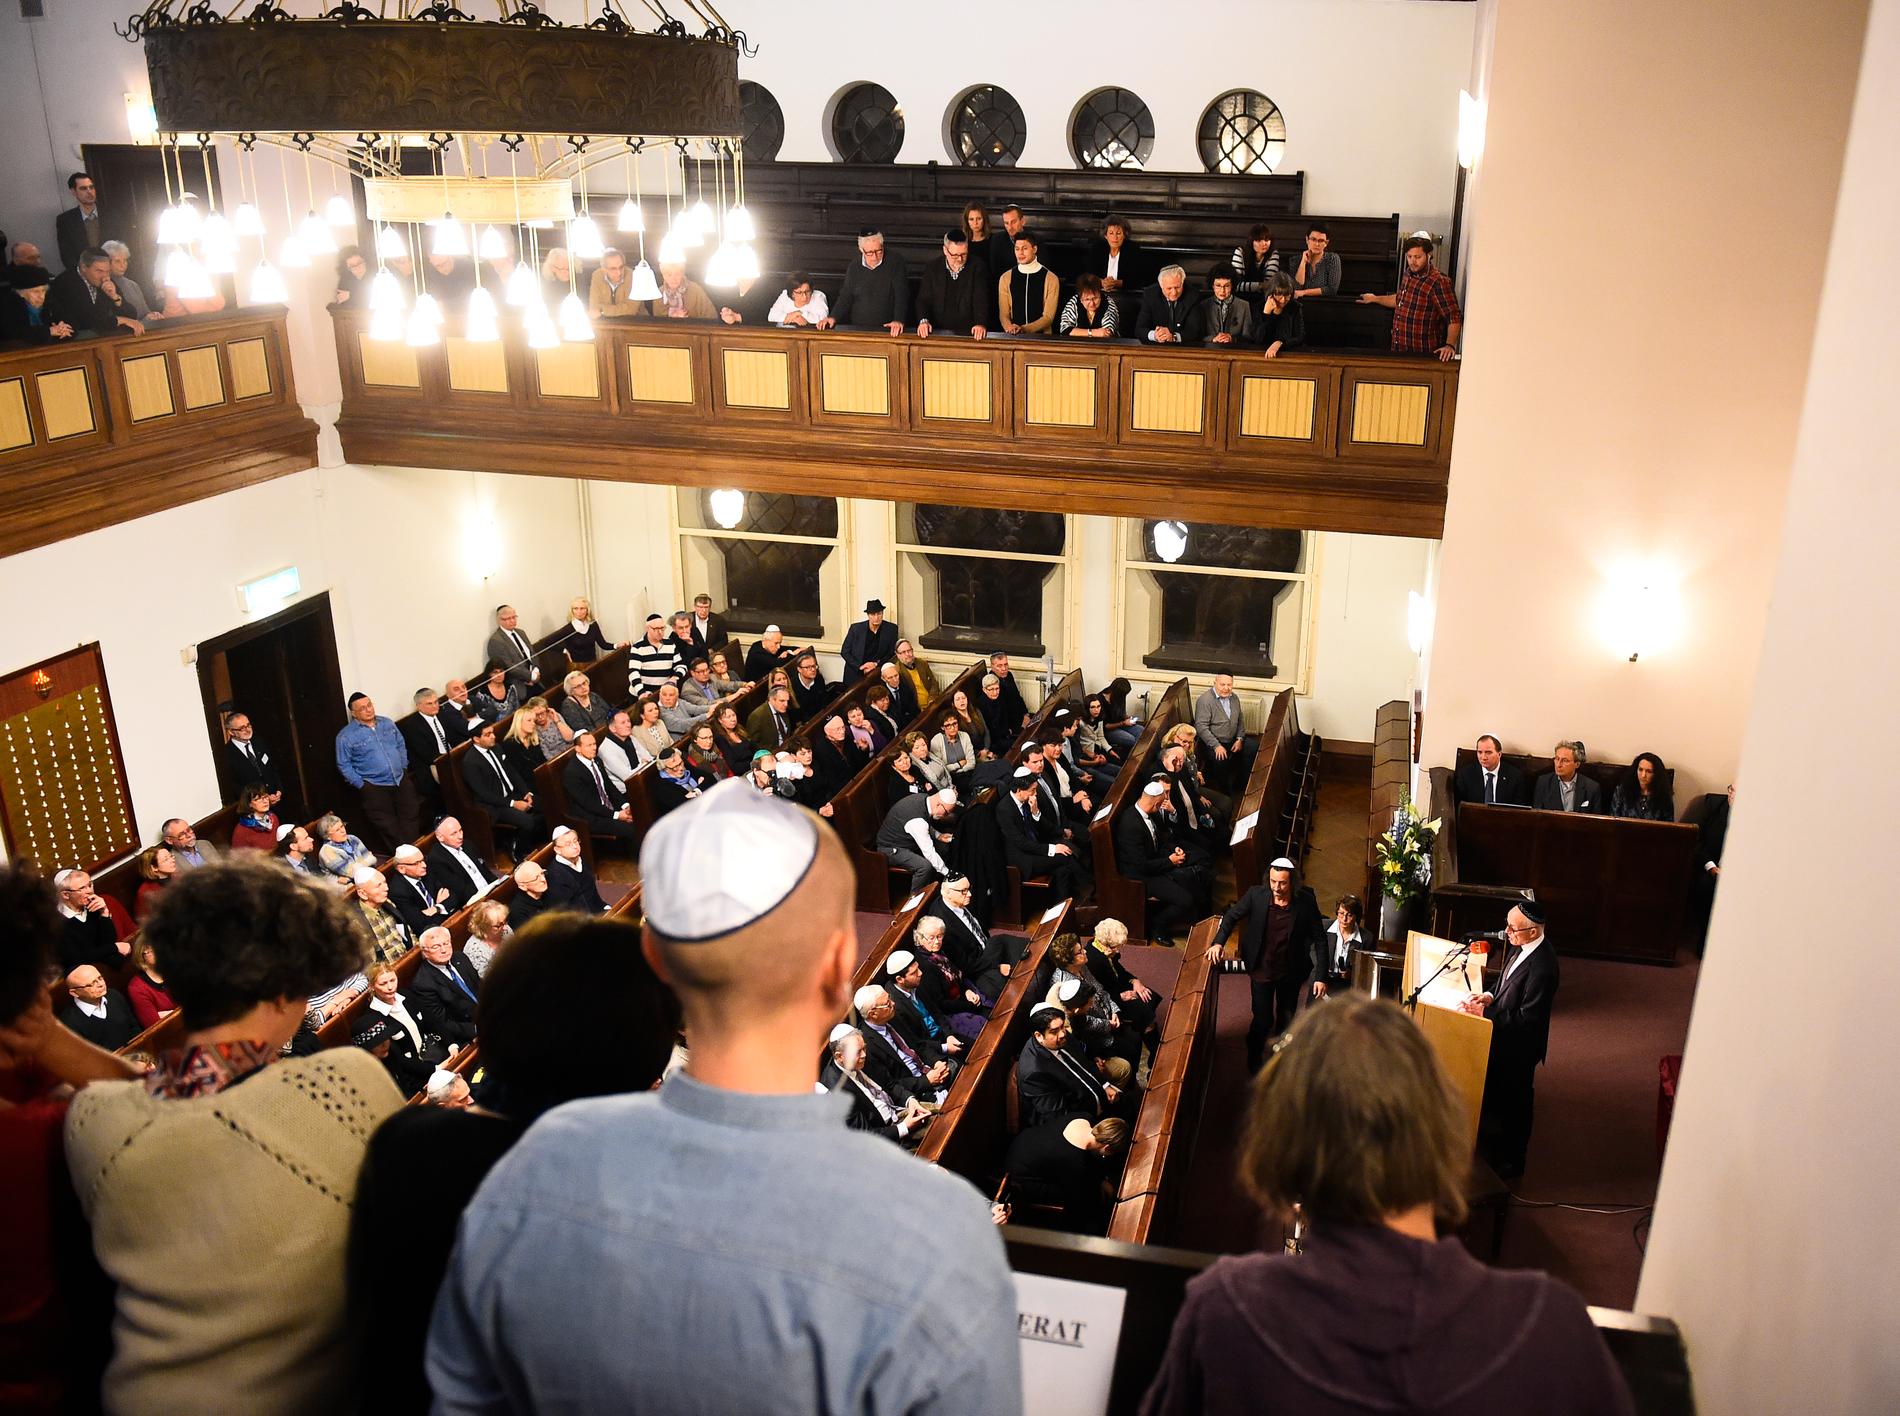 Förintelsens minnesdag uppmärksammas i Malmö synagoga 2016.